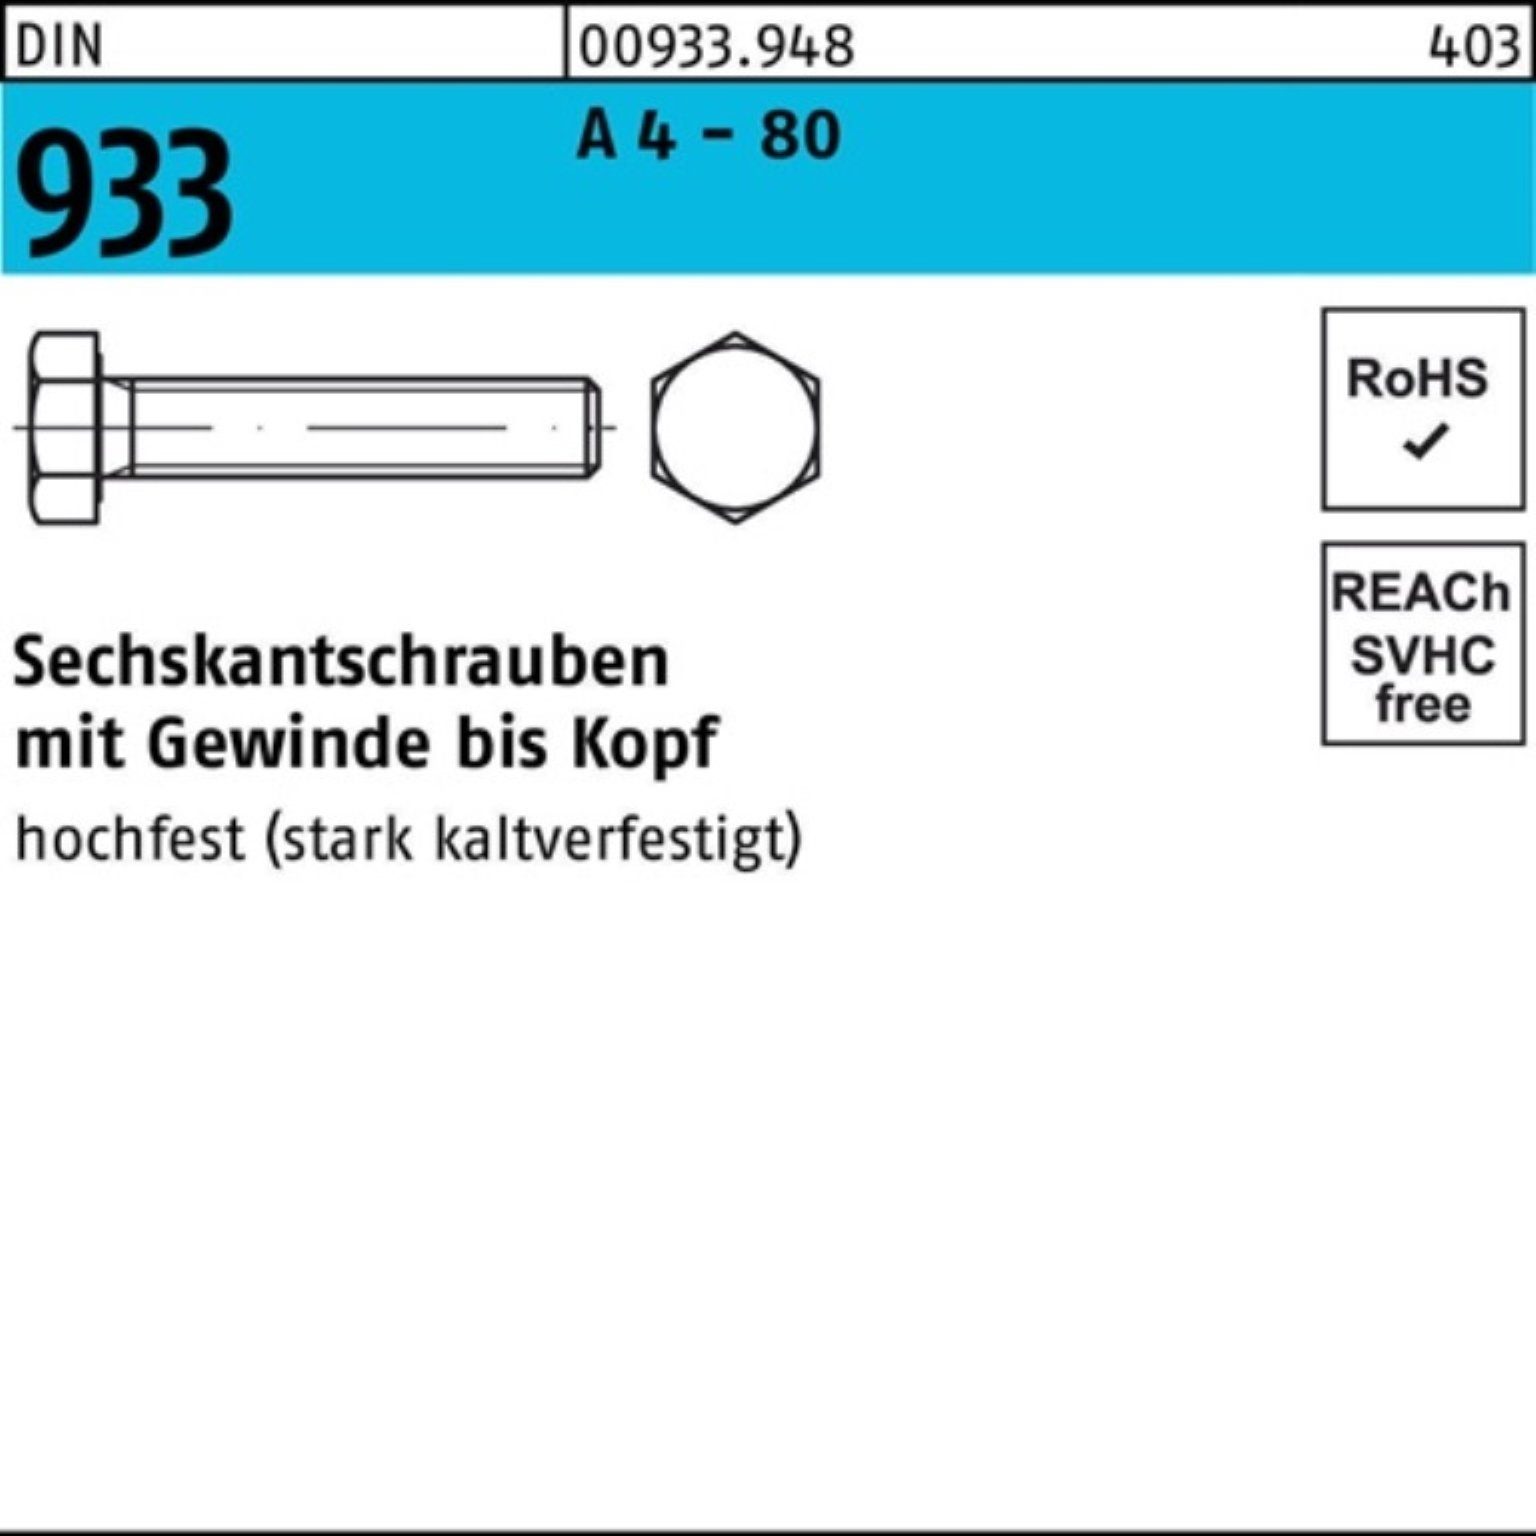 Reyher Sechskantschraube 100er Pack Sechskantschraube DIN 933 VG M10x 140 A 4 - 80 1 Stück DIN